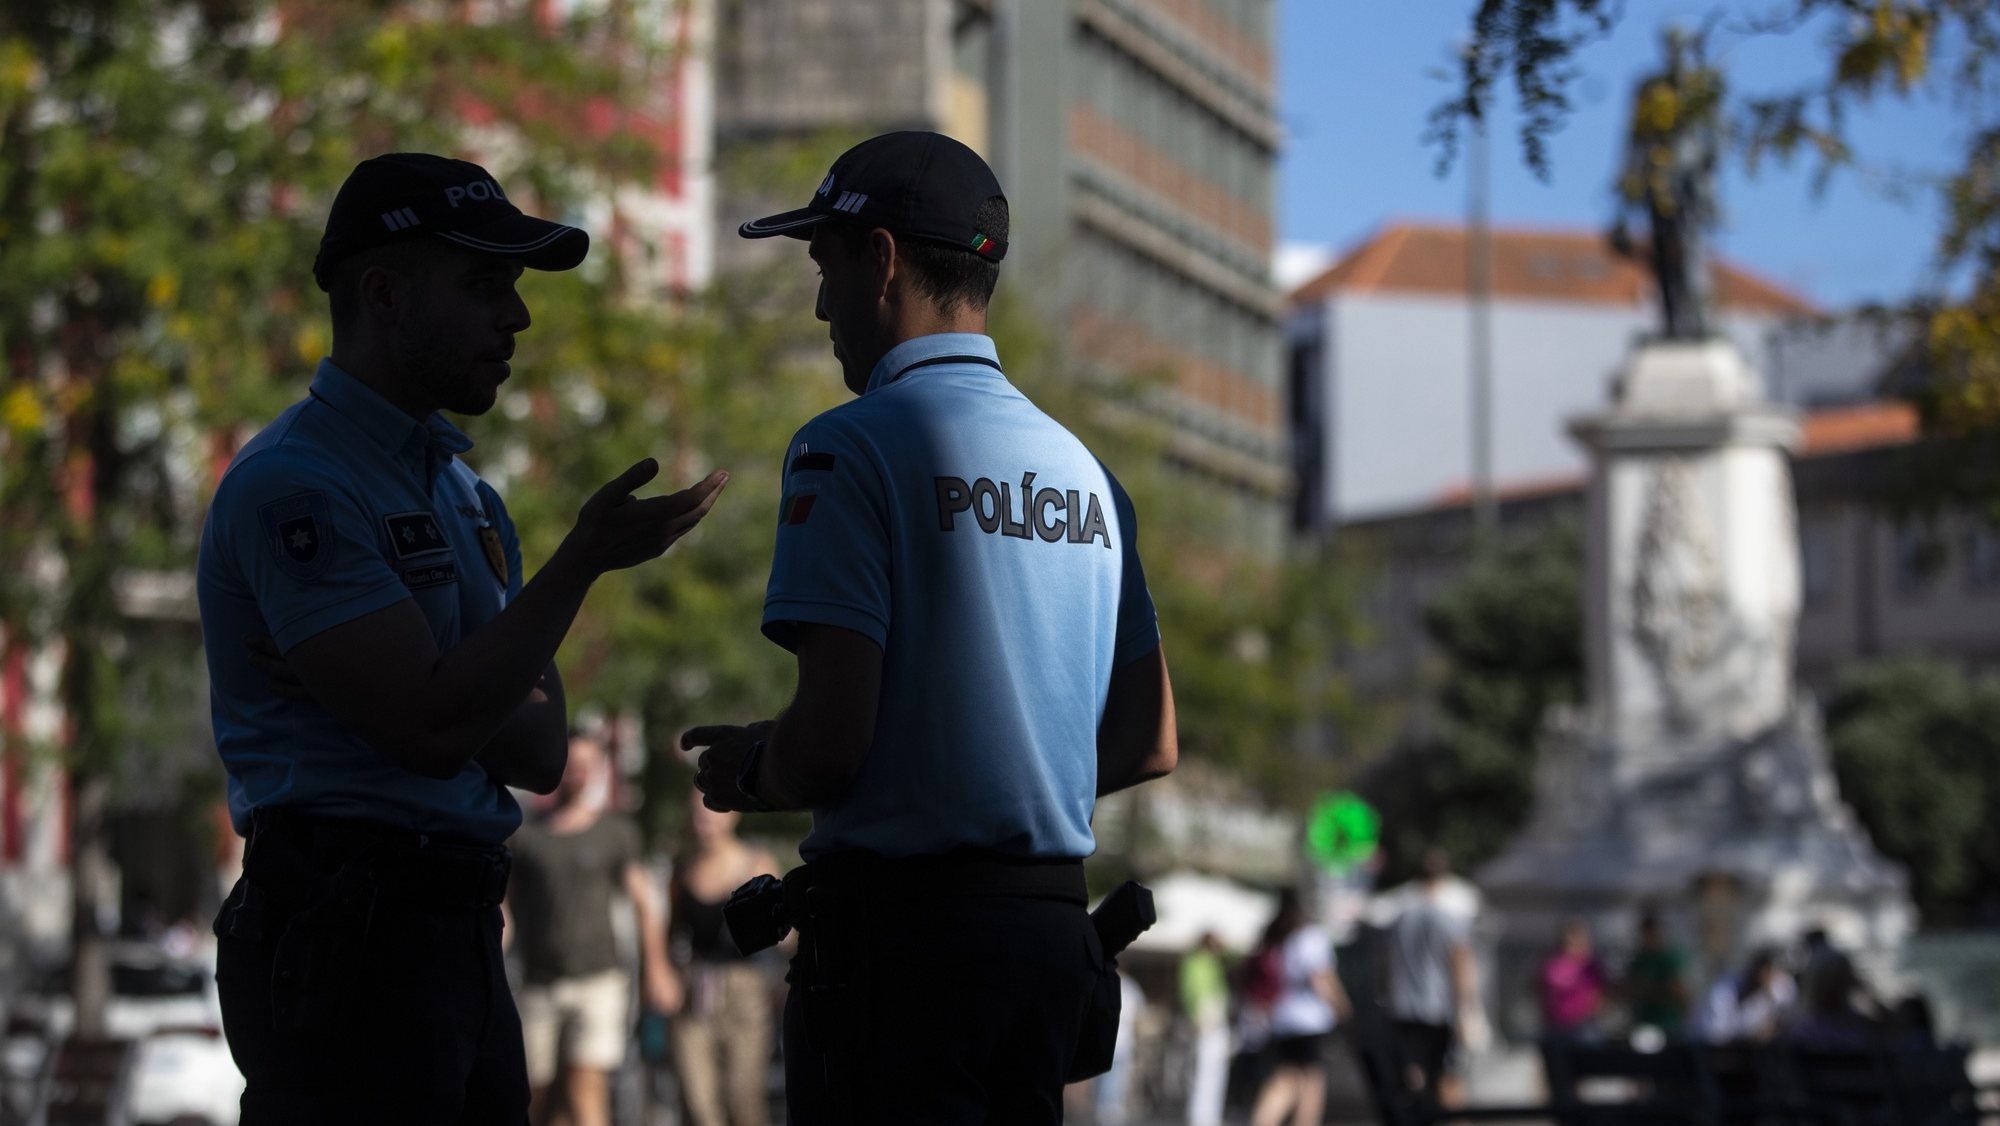 Elementos da Polícia de Segurança Pública (PSP) durante a apresentação das Unidades Móveis de Atendimento da PSP, na Praça da Batalha, no Porto, 28 de julho de 2022. As unidades móveis de atendimento, foram apresentadas hoje, simultaneamente em Lisboa e no Porto. JOSÉ COELHO/LUSA